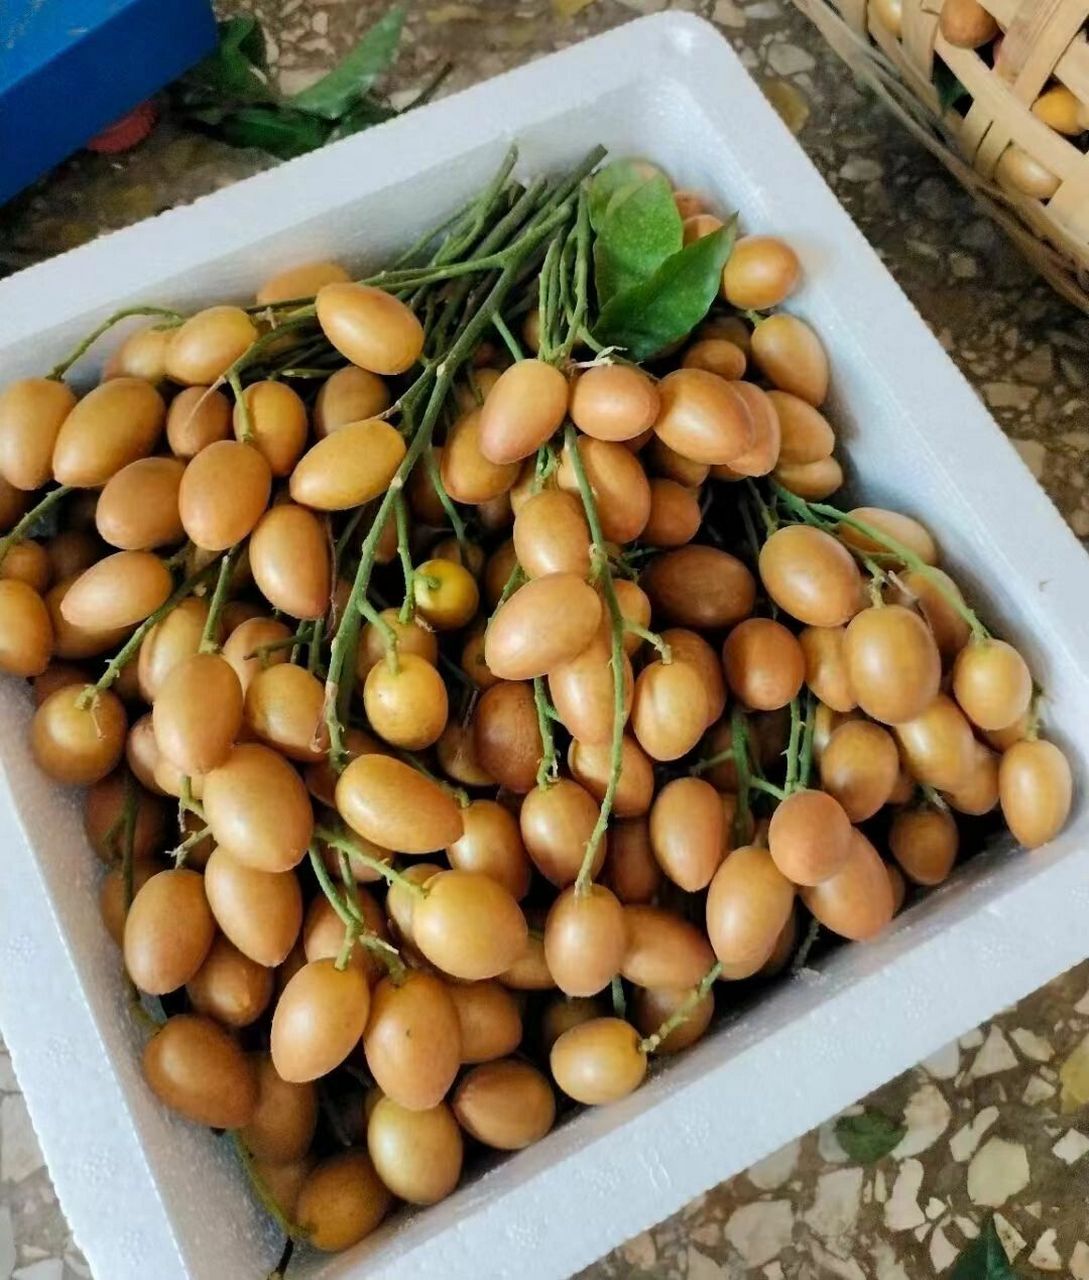 黄皮果品种之一《贵妃果》 黄皮果中上等品种,新晋网红果9799